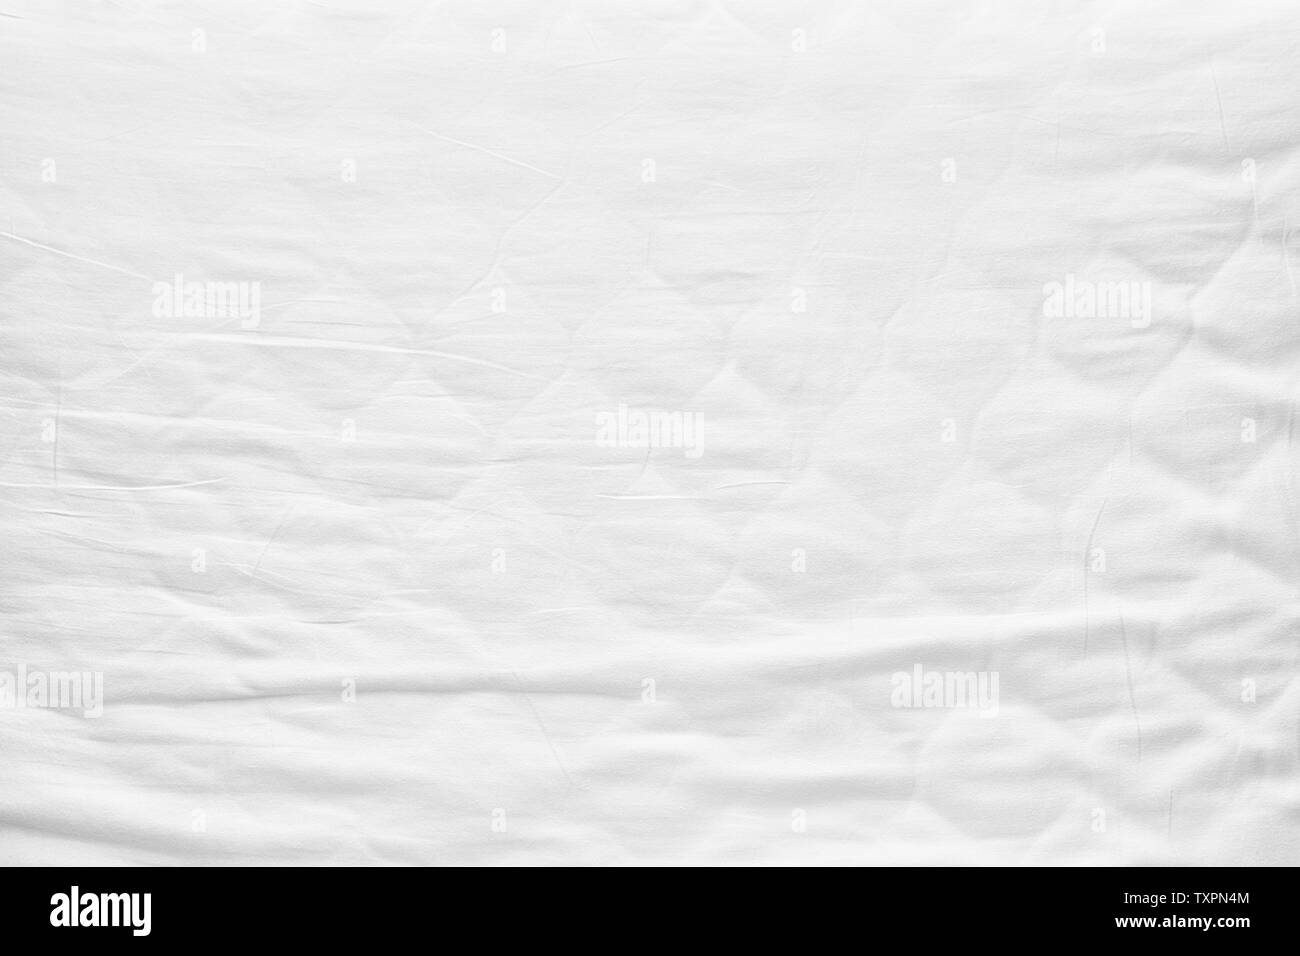 Ansicht von oben Bettwäsche Blätter weißen Stoff verknittert Leinwand Textur Hintergrund für Design blackdrop oder Overlay Hintergrund Stockfoto